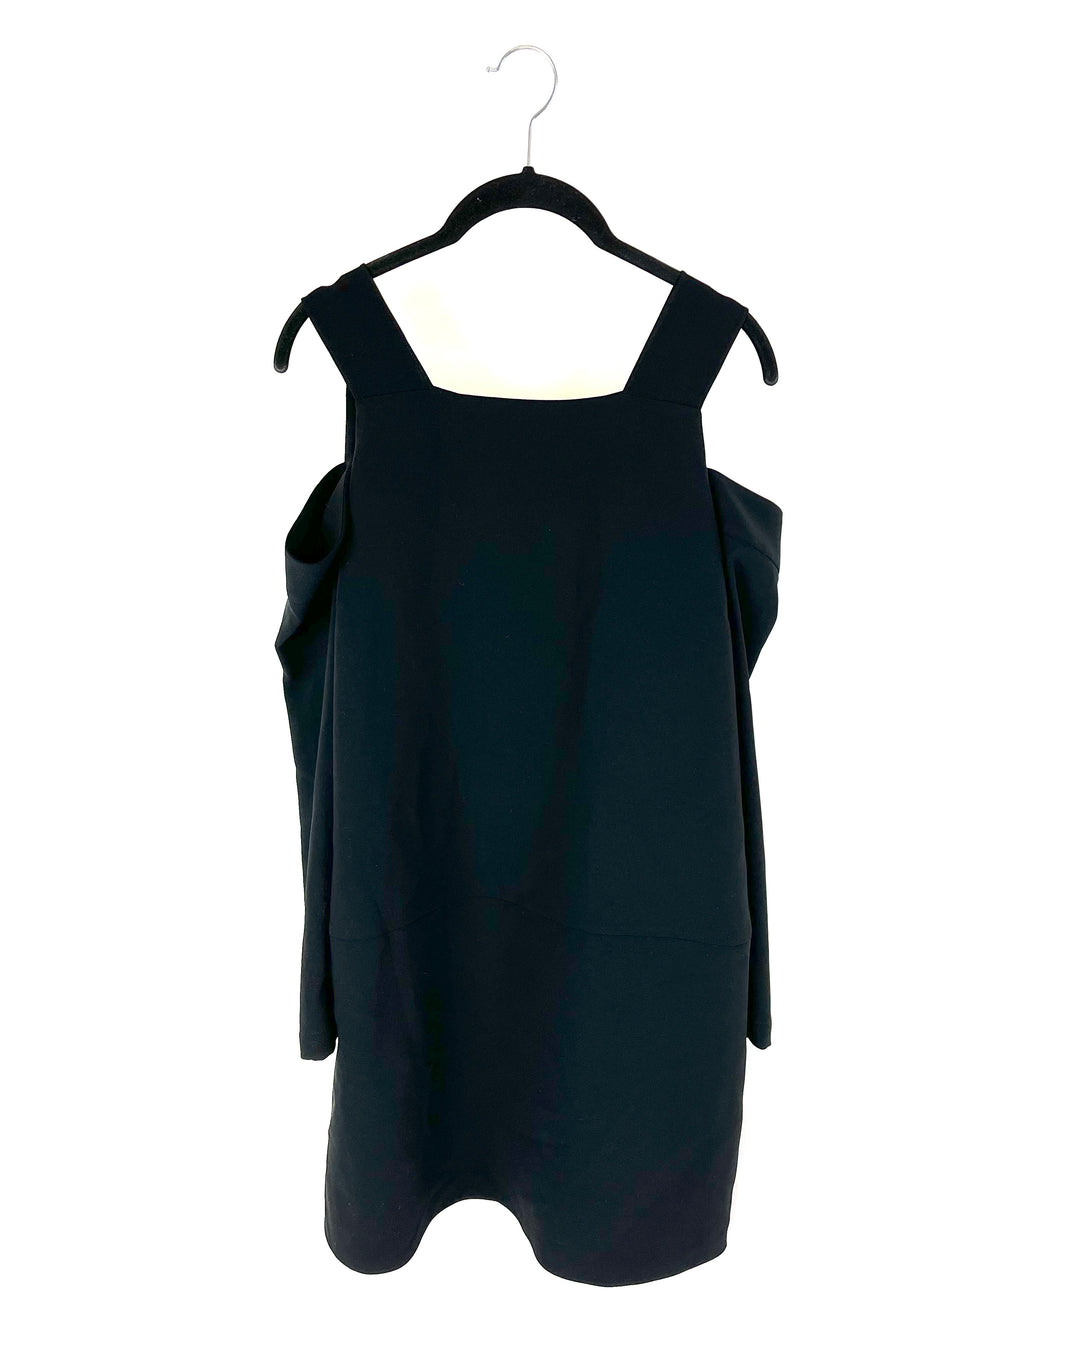 Black Cold Shoulder Dress - Size 4-6